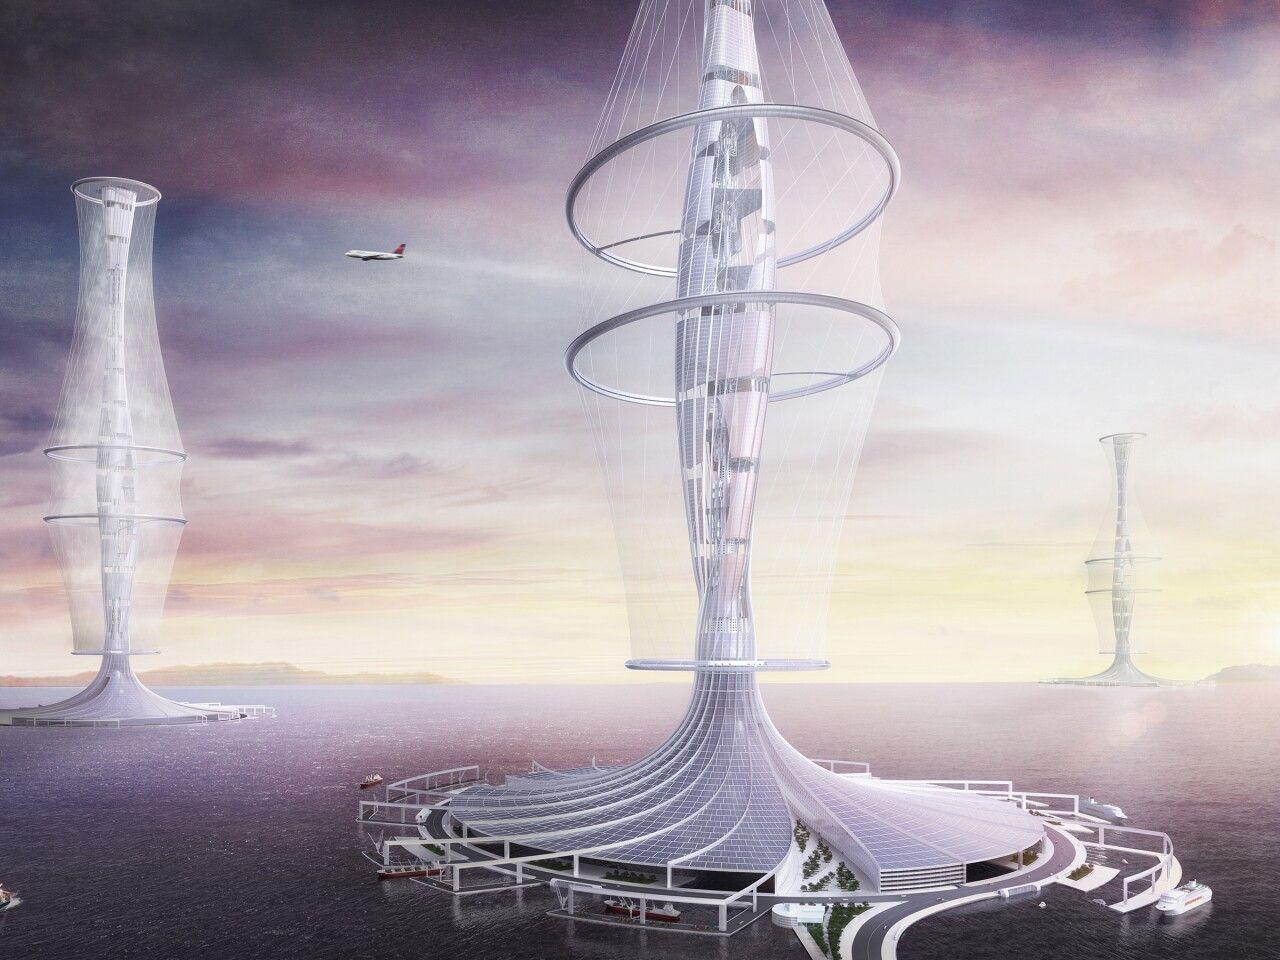 Конкурс футуристических небоскребов дает волю воображению дизайнеров